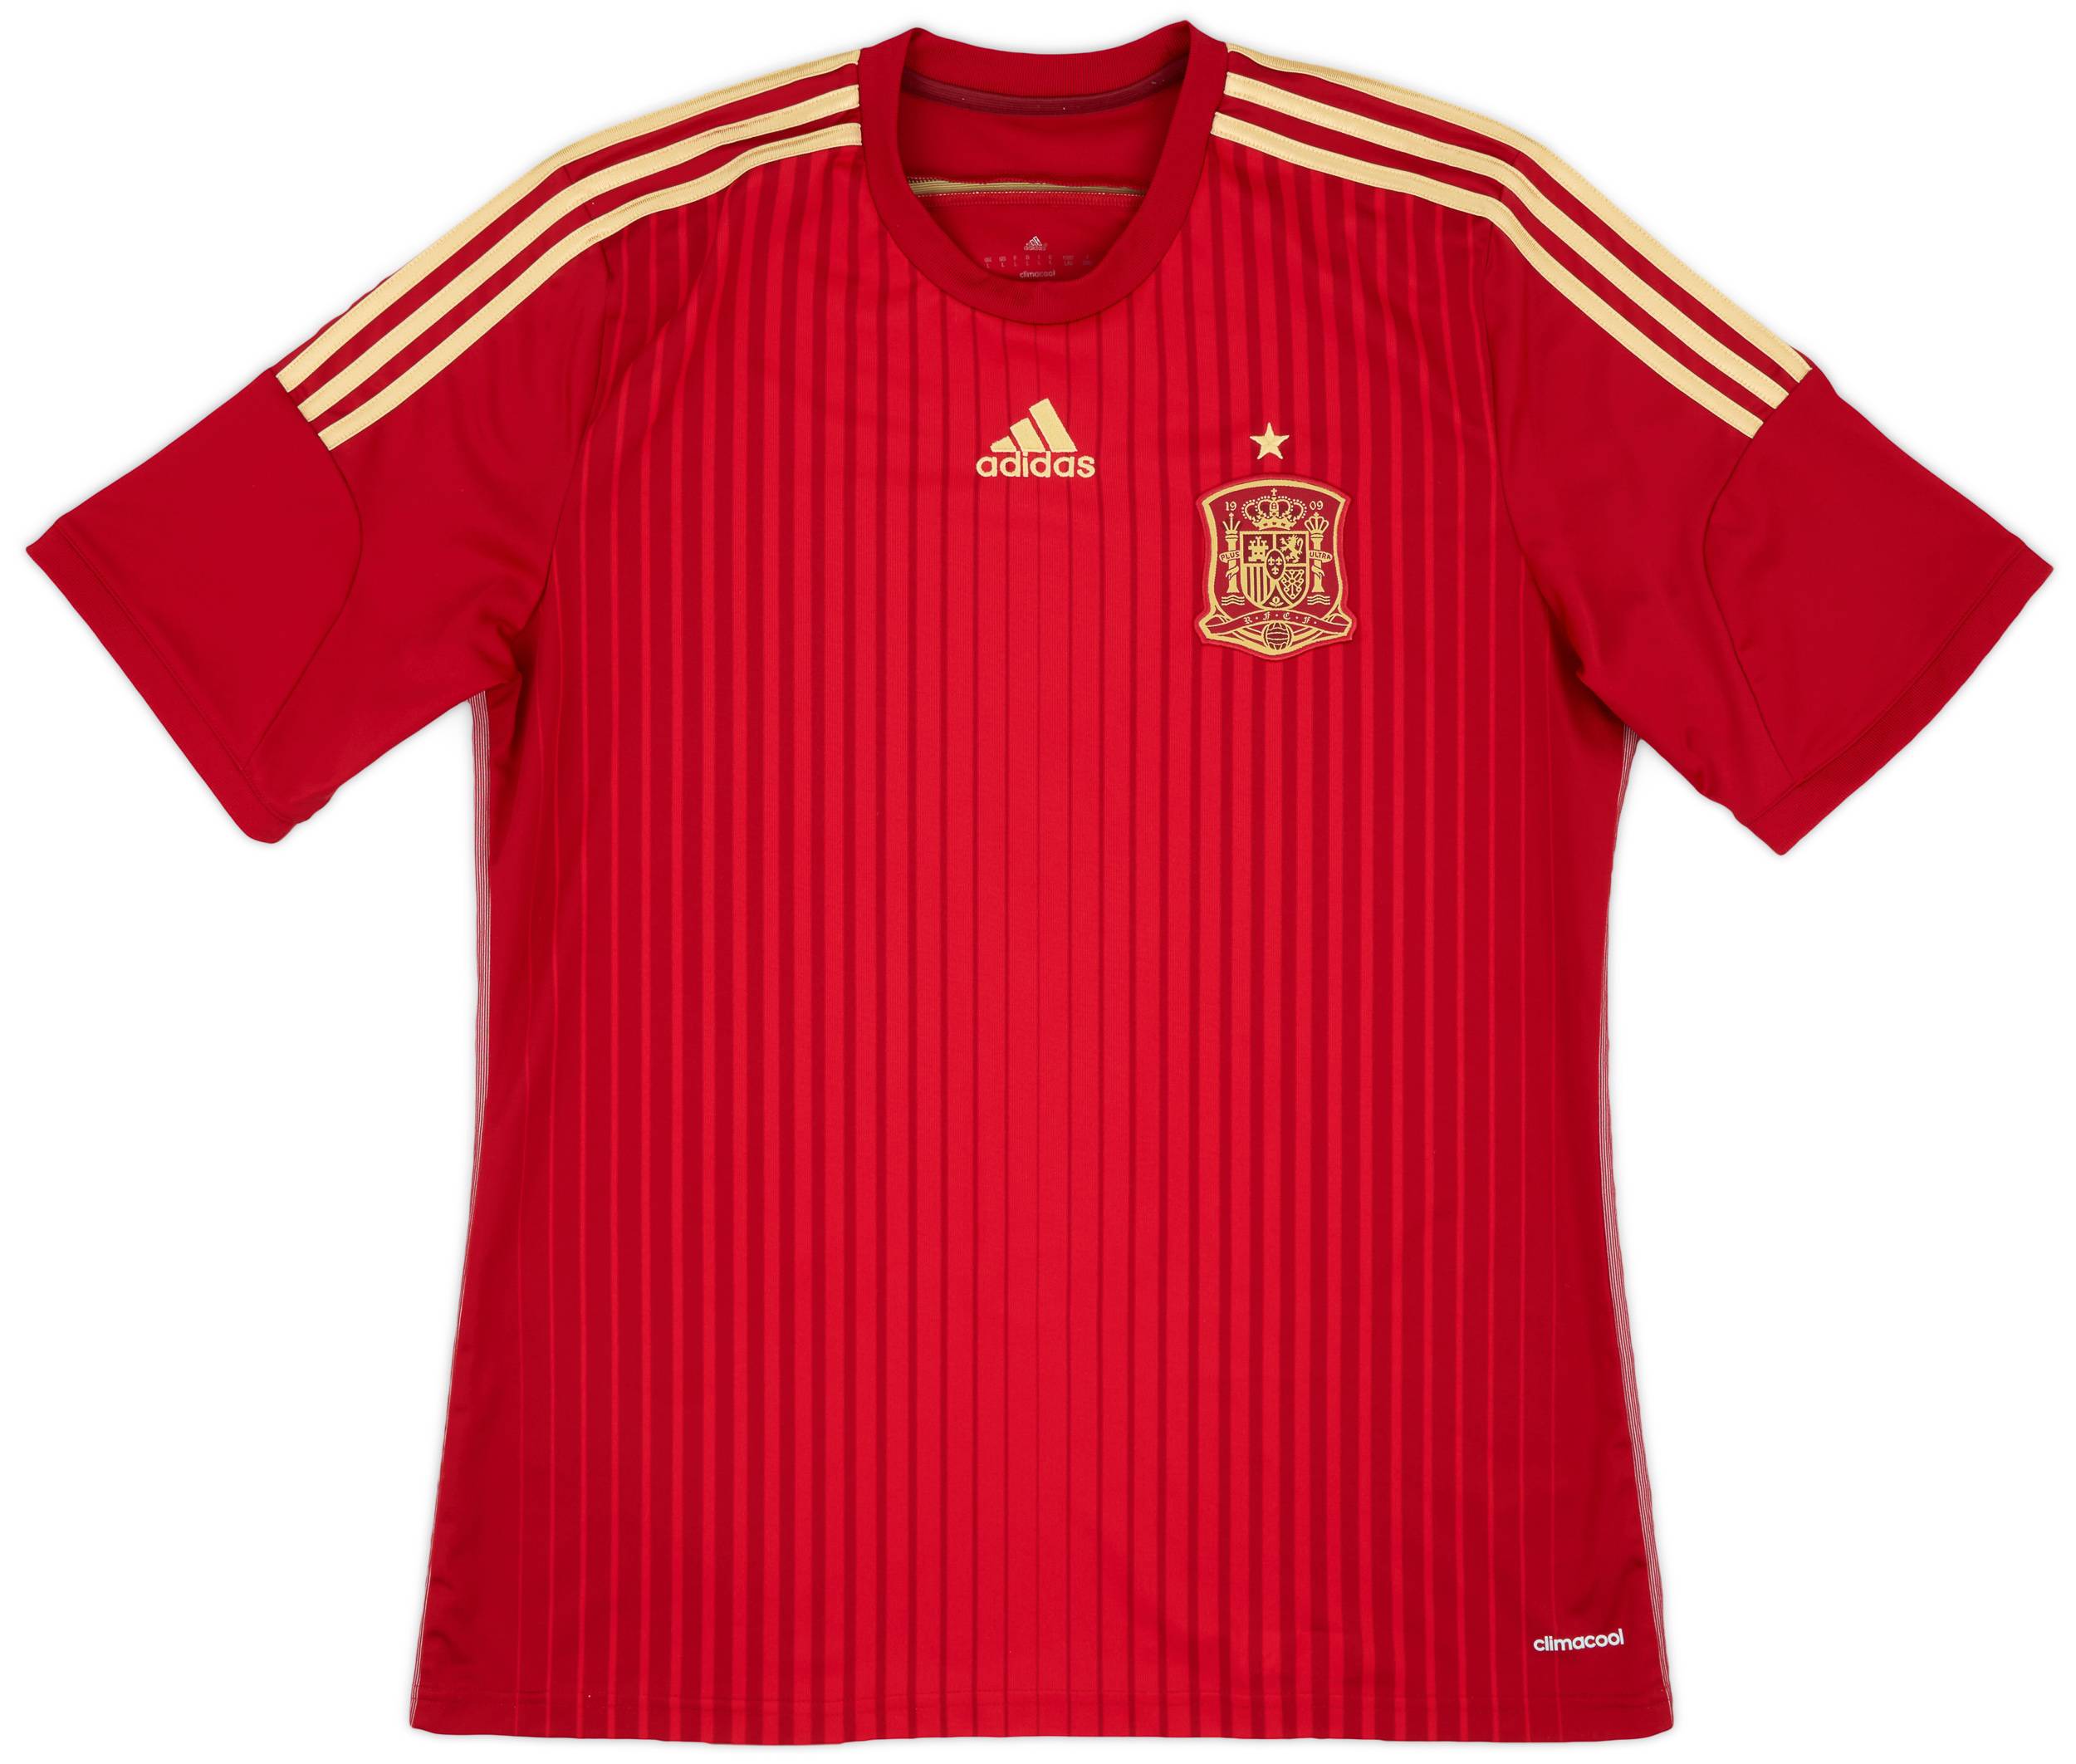 2013-15 Spain Home Shirt - 9/10 - (L)